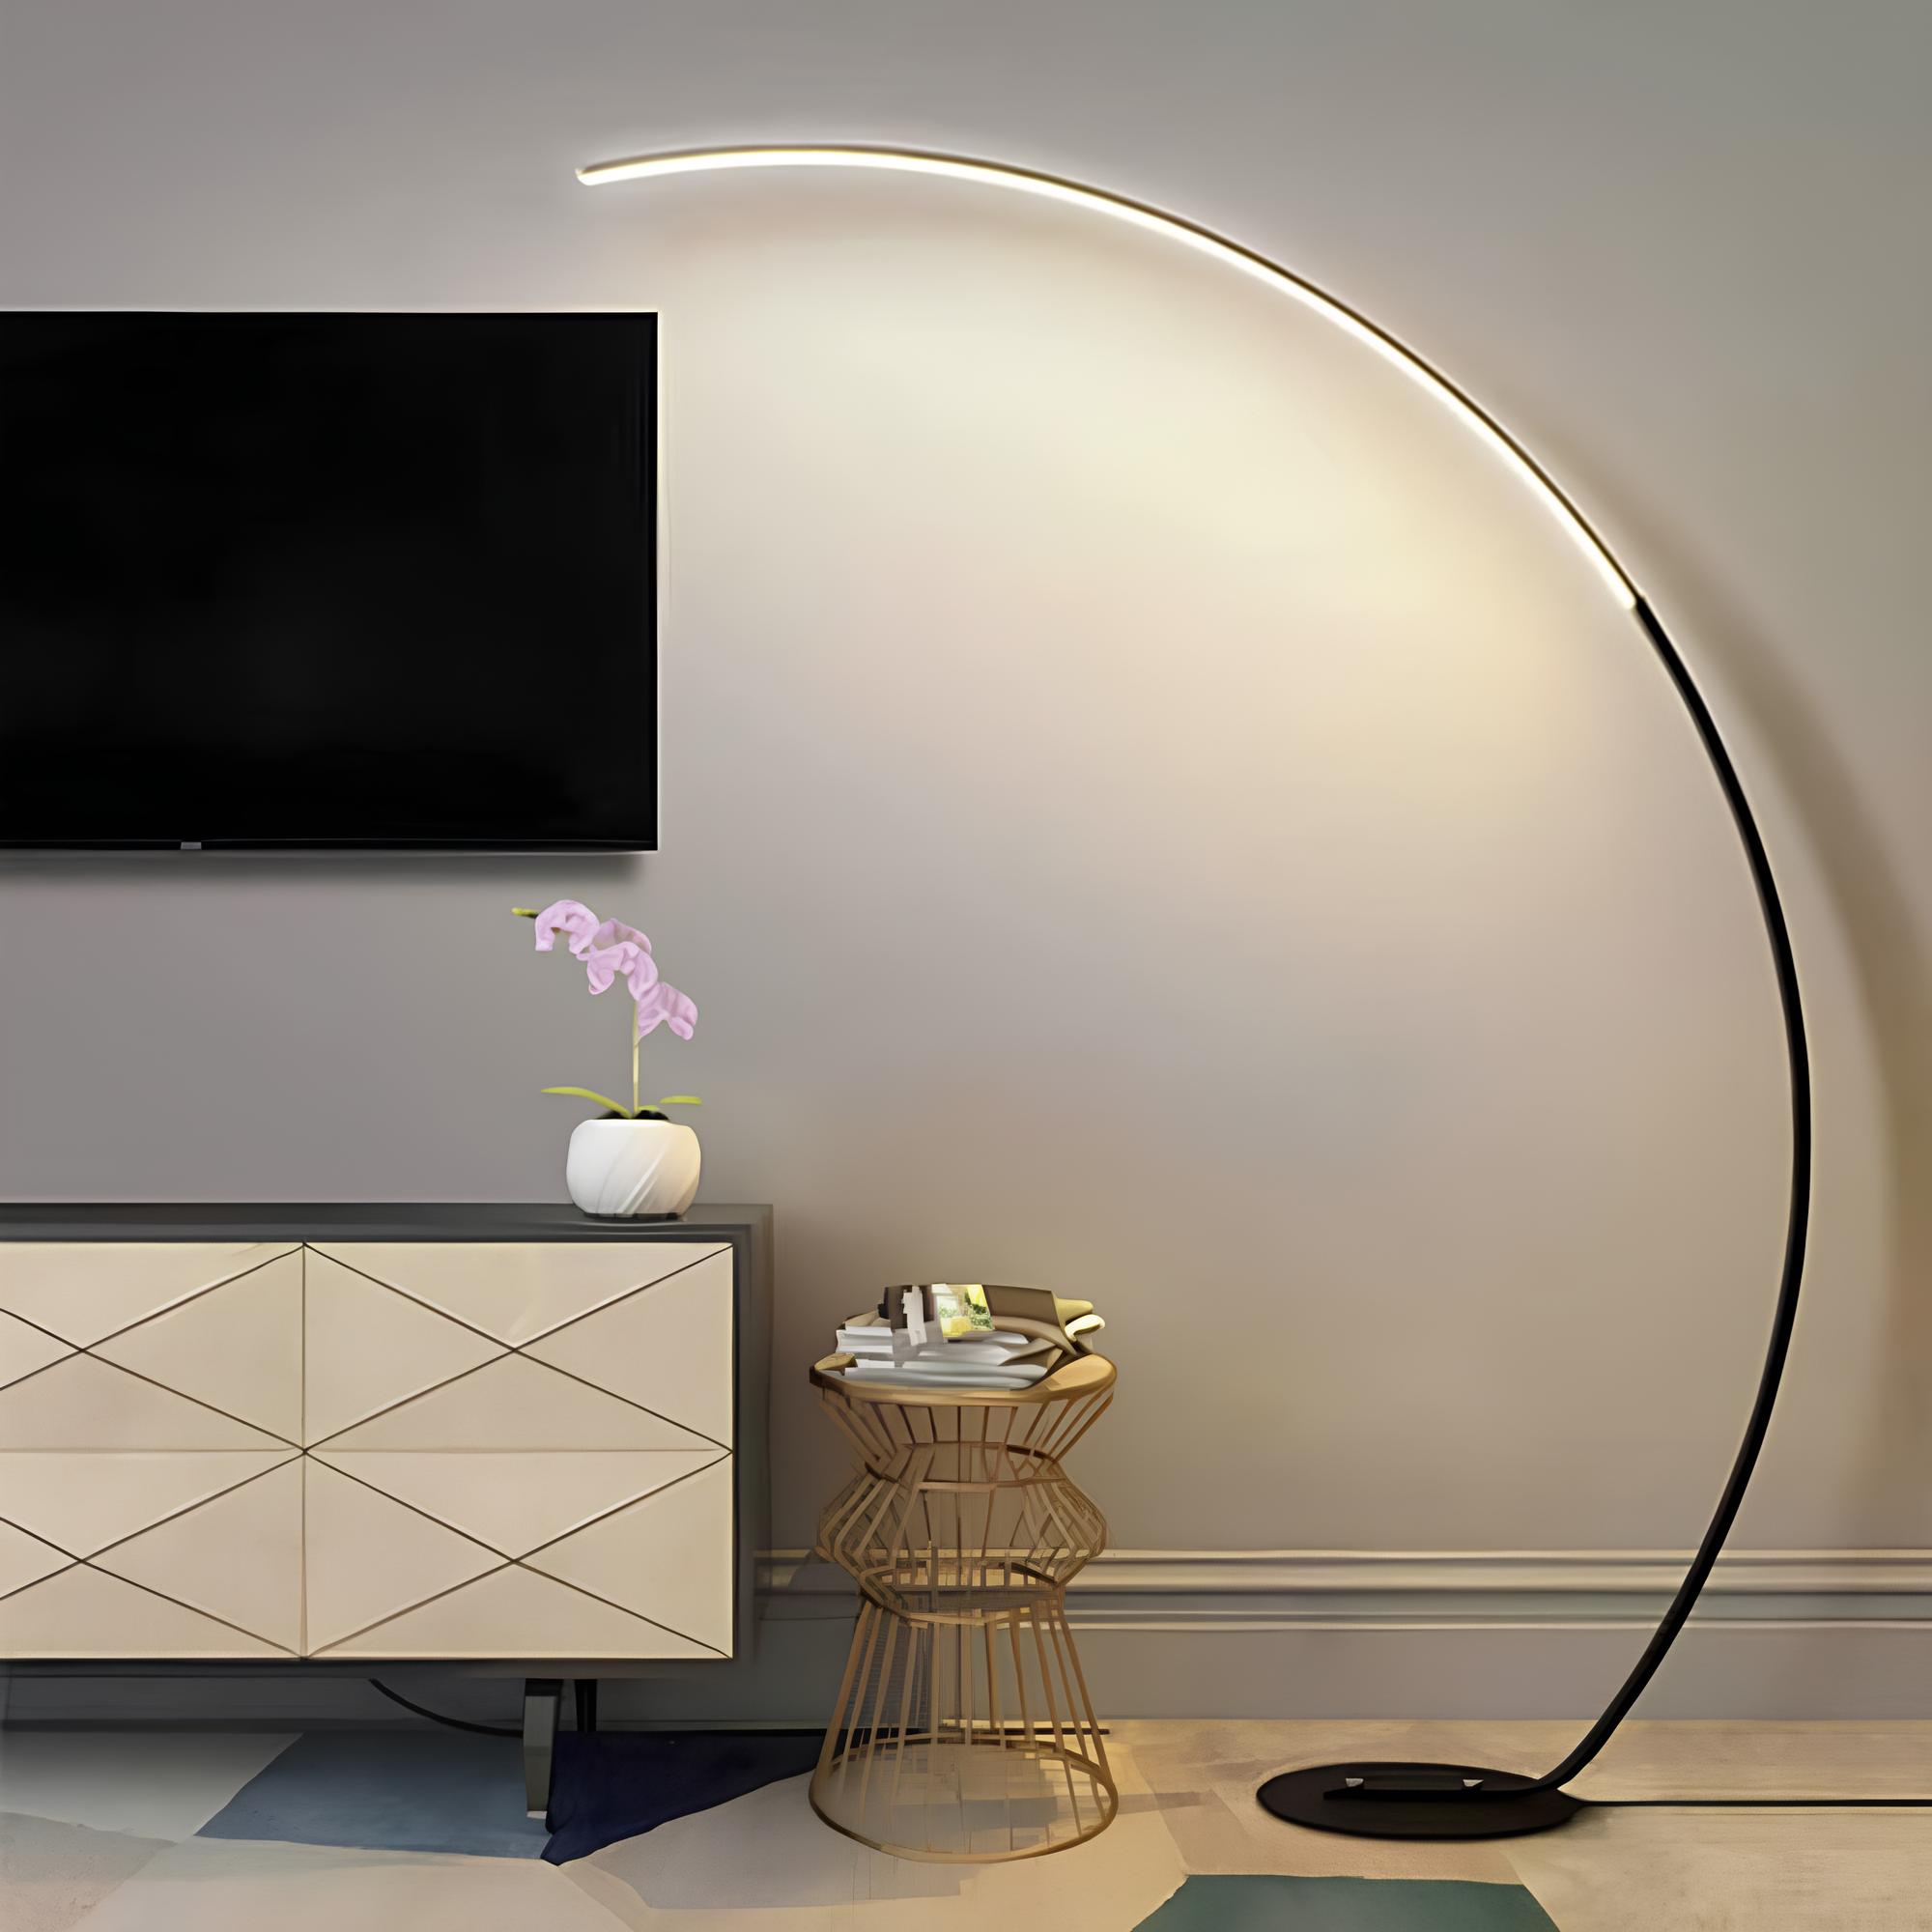 espaço com um armário moderno, uma mesinha de metal na cor dourada e ao lado uma luminária de LED moderna, na parede uma TV .